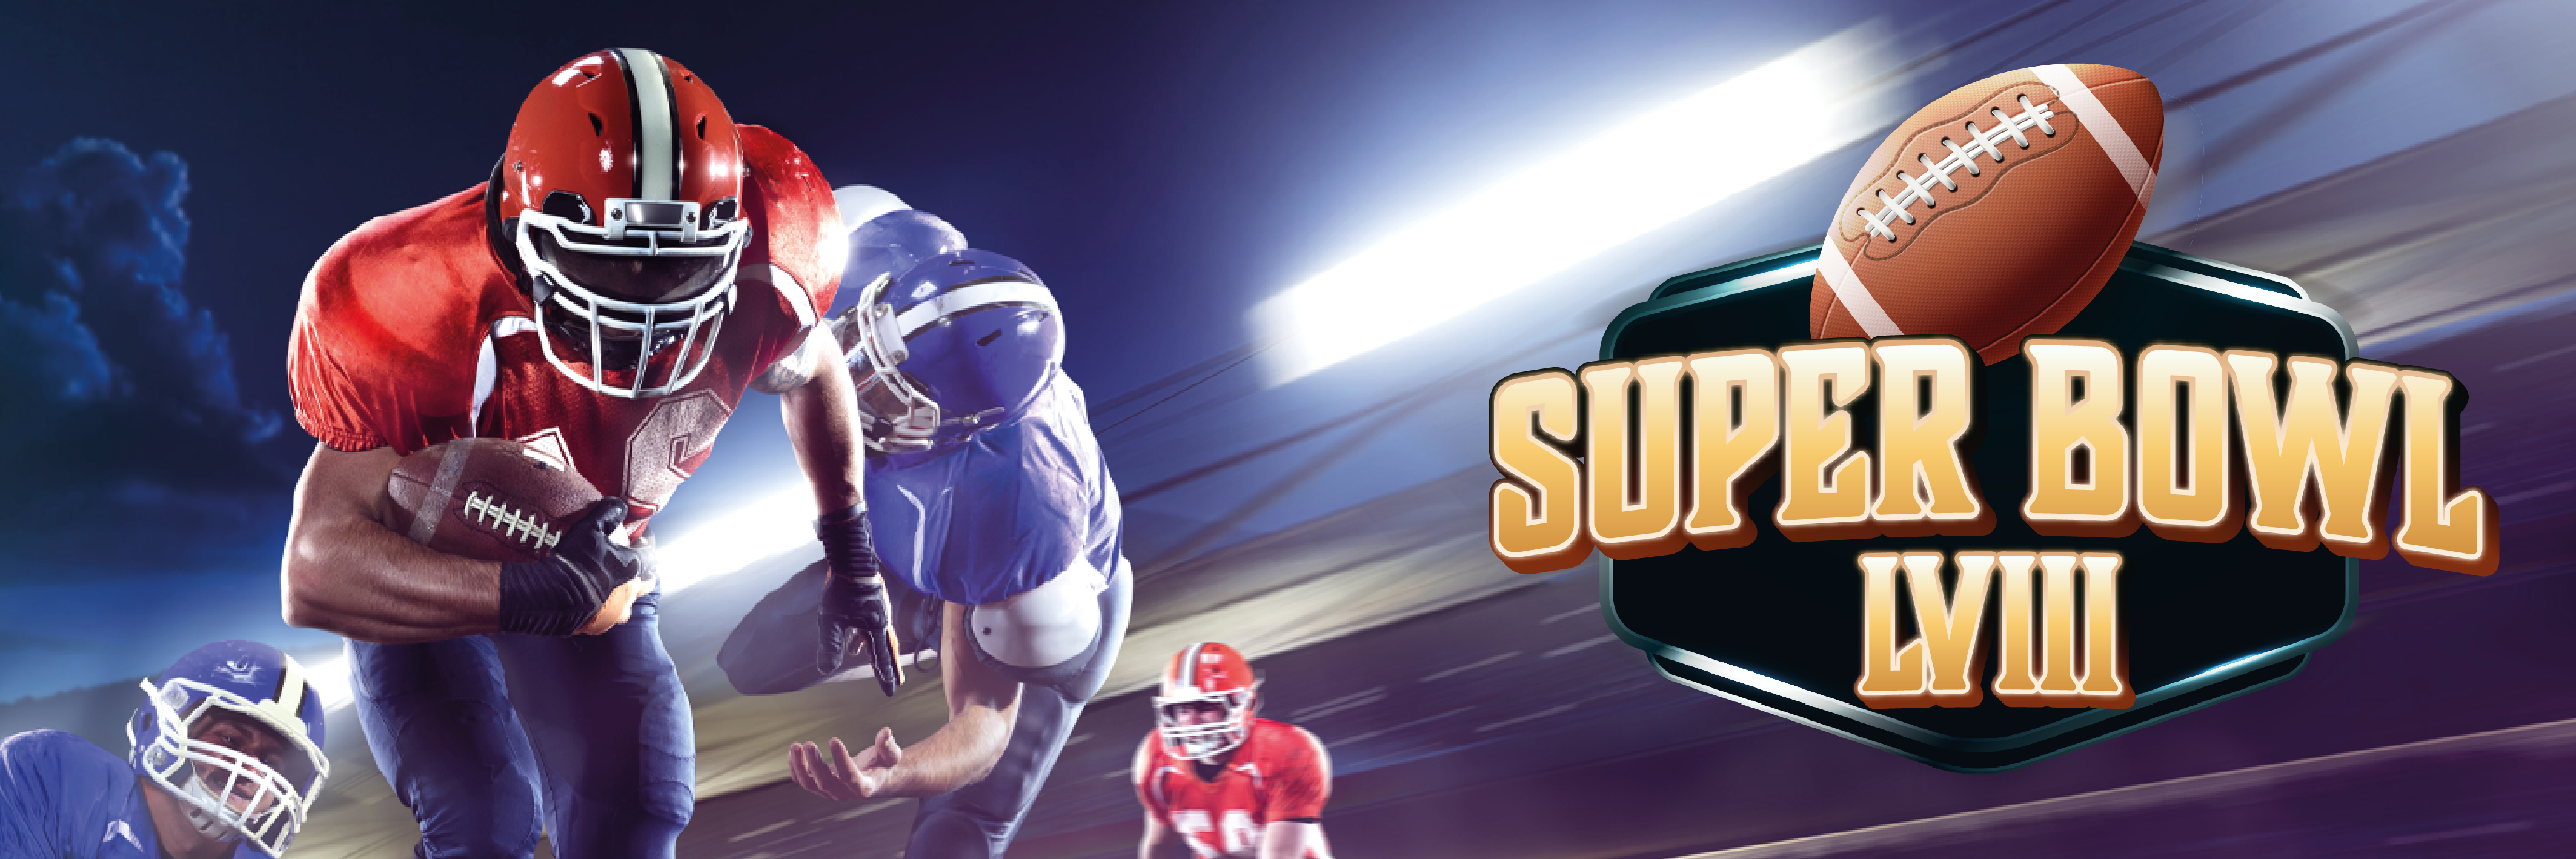 NFL Super Bowl 58 recap